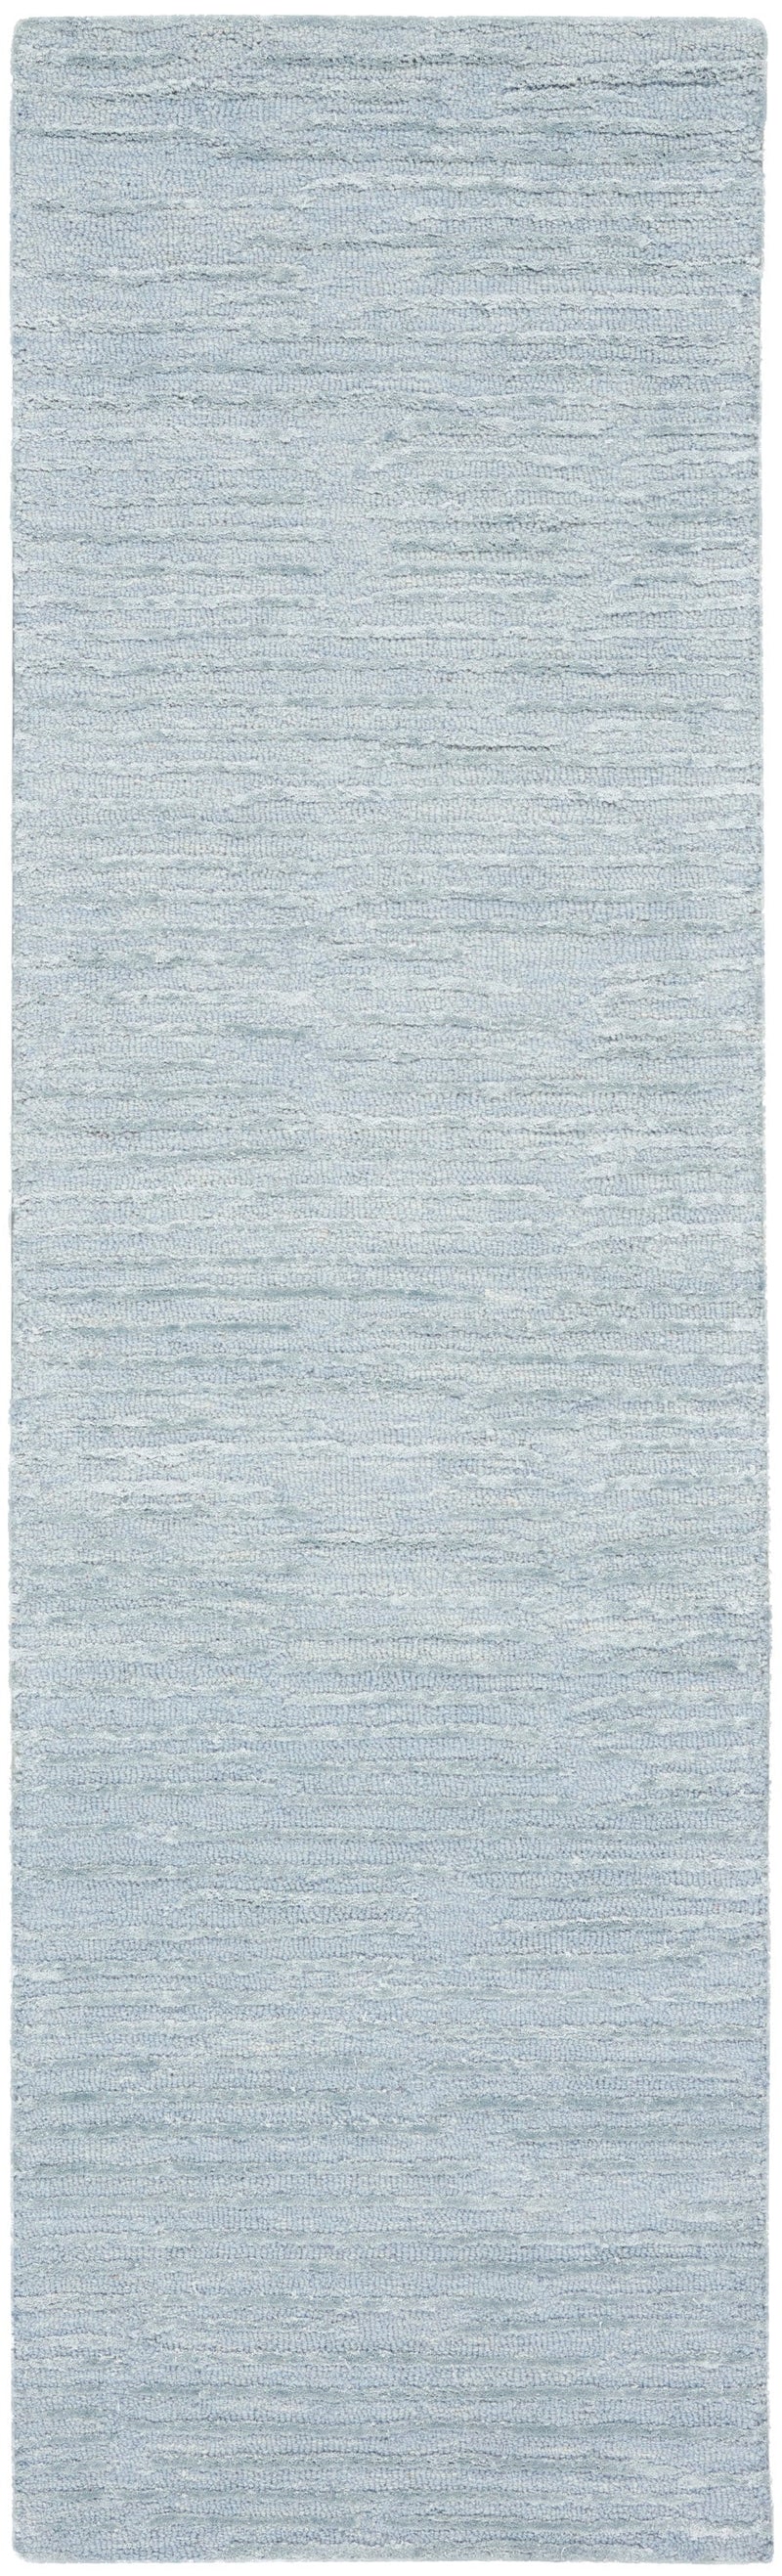 media image for ck010 linear handmade light blue rug by nourison 99446879950 redo 2 216